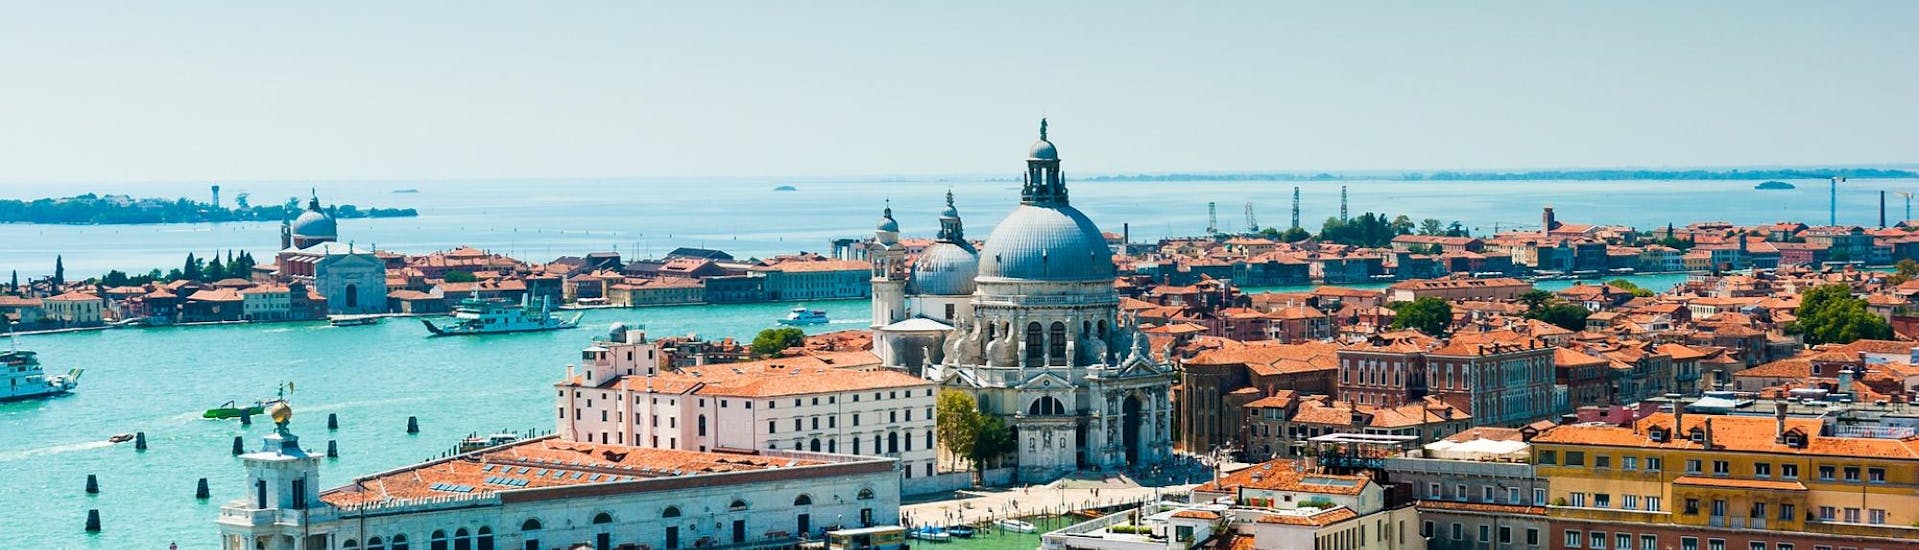 Vue panoramique de Venise que vous pourrez visiter lors de la balade en bateau à Murano et Burano tout en passant la matinée à Venise avec Il Doge di Venezia.